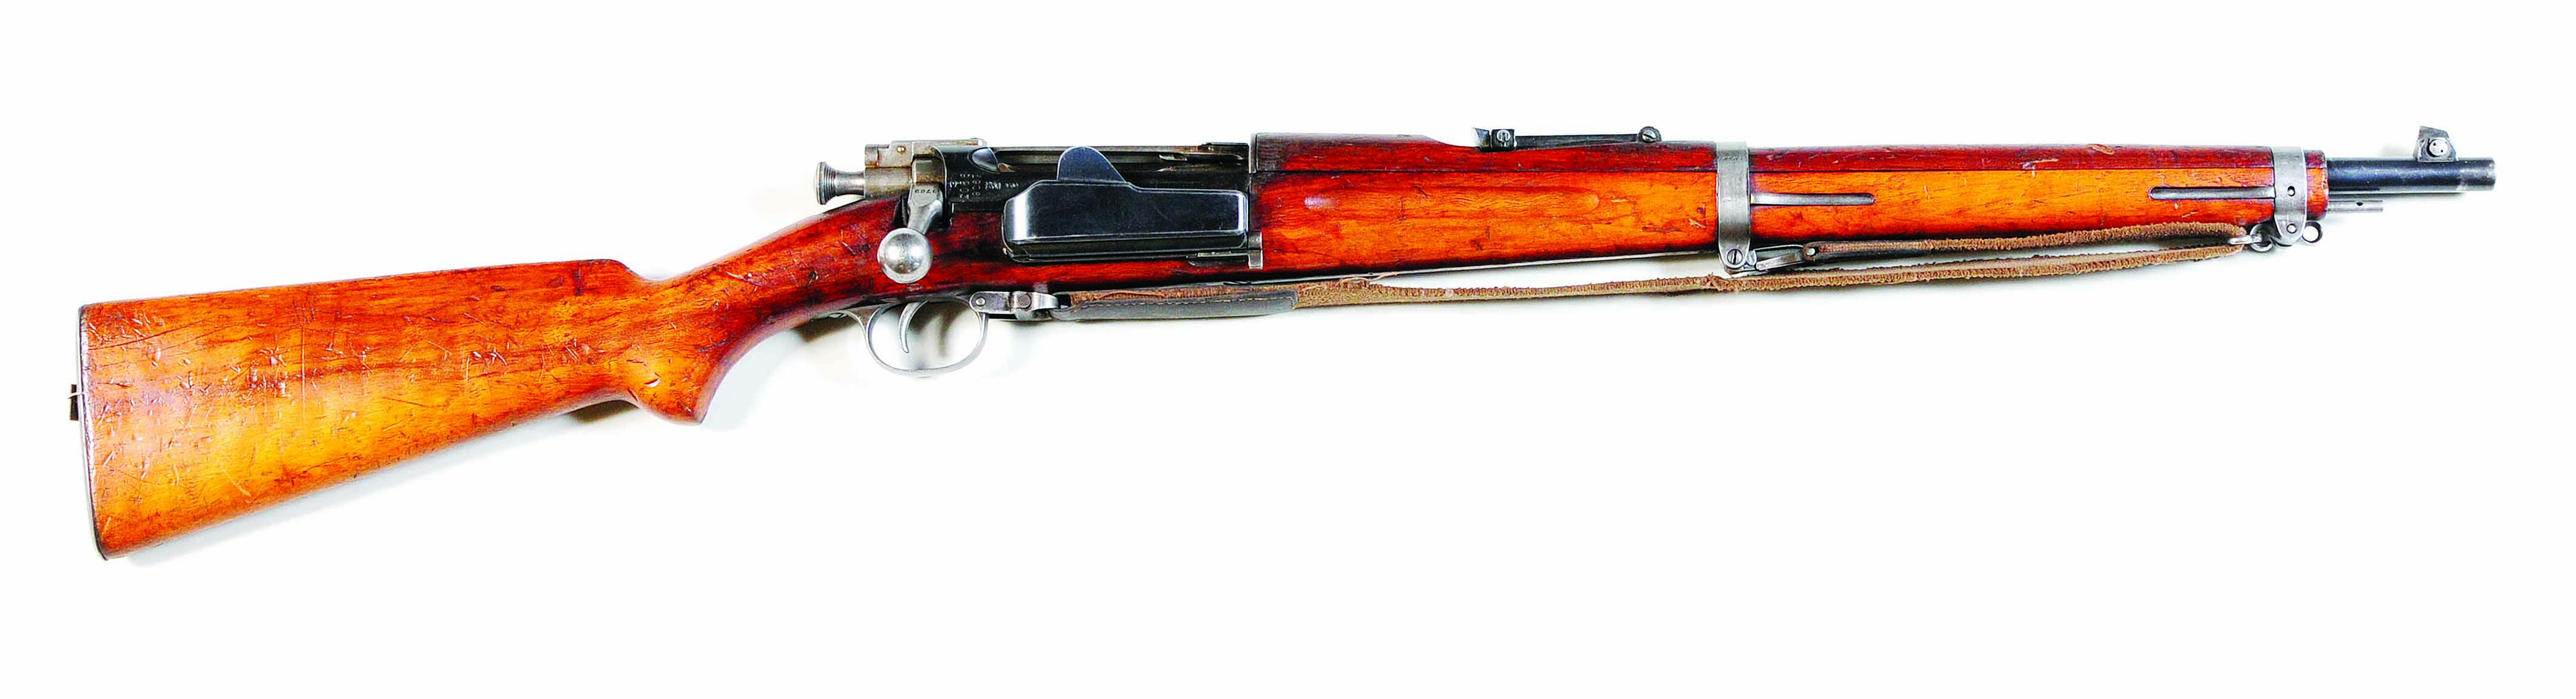 ./guns/rifle/bilder/Rifle-Kongsberg-Krag-M1904-FMU-1.jpg